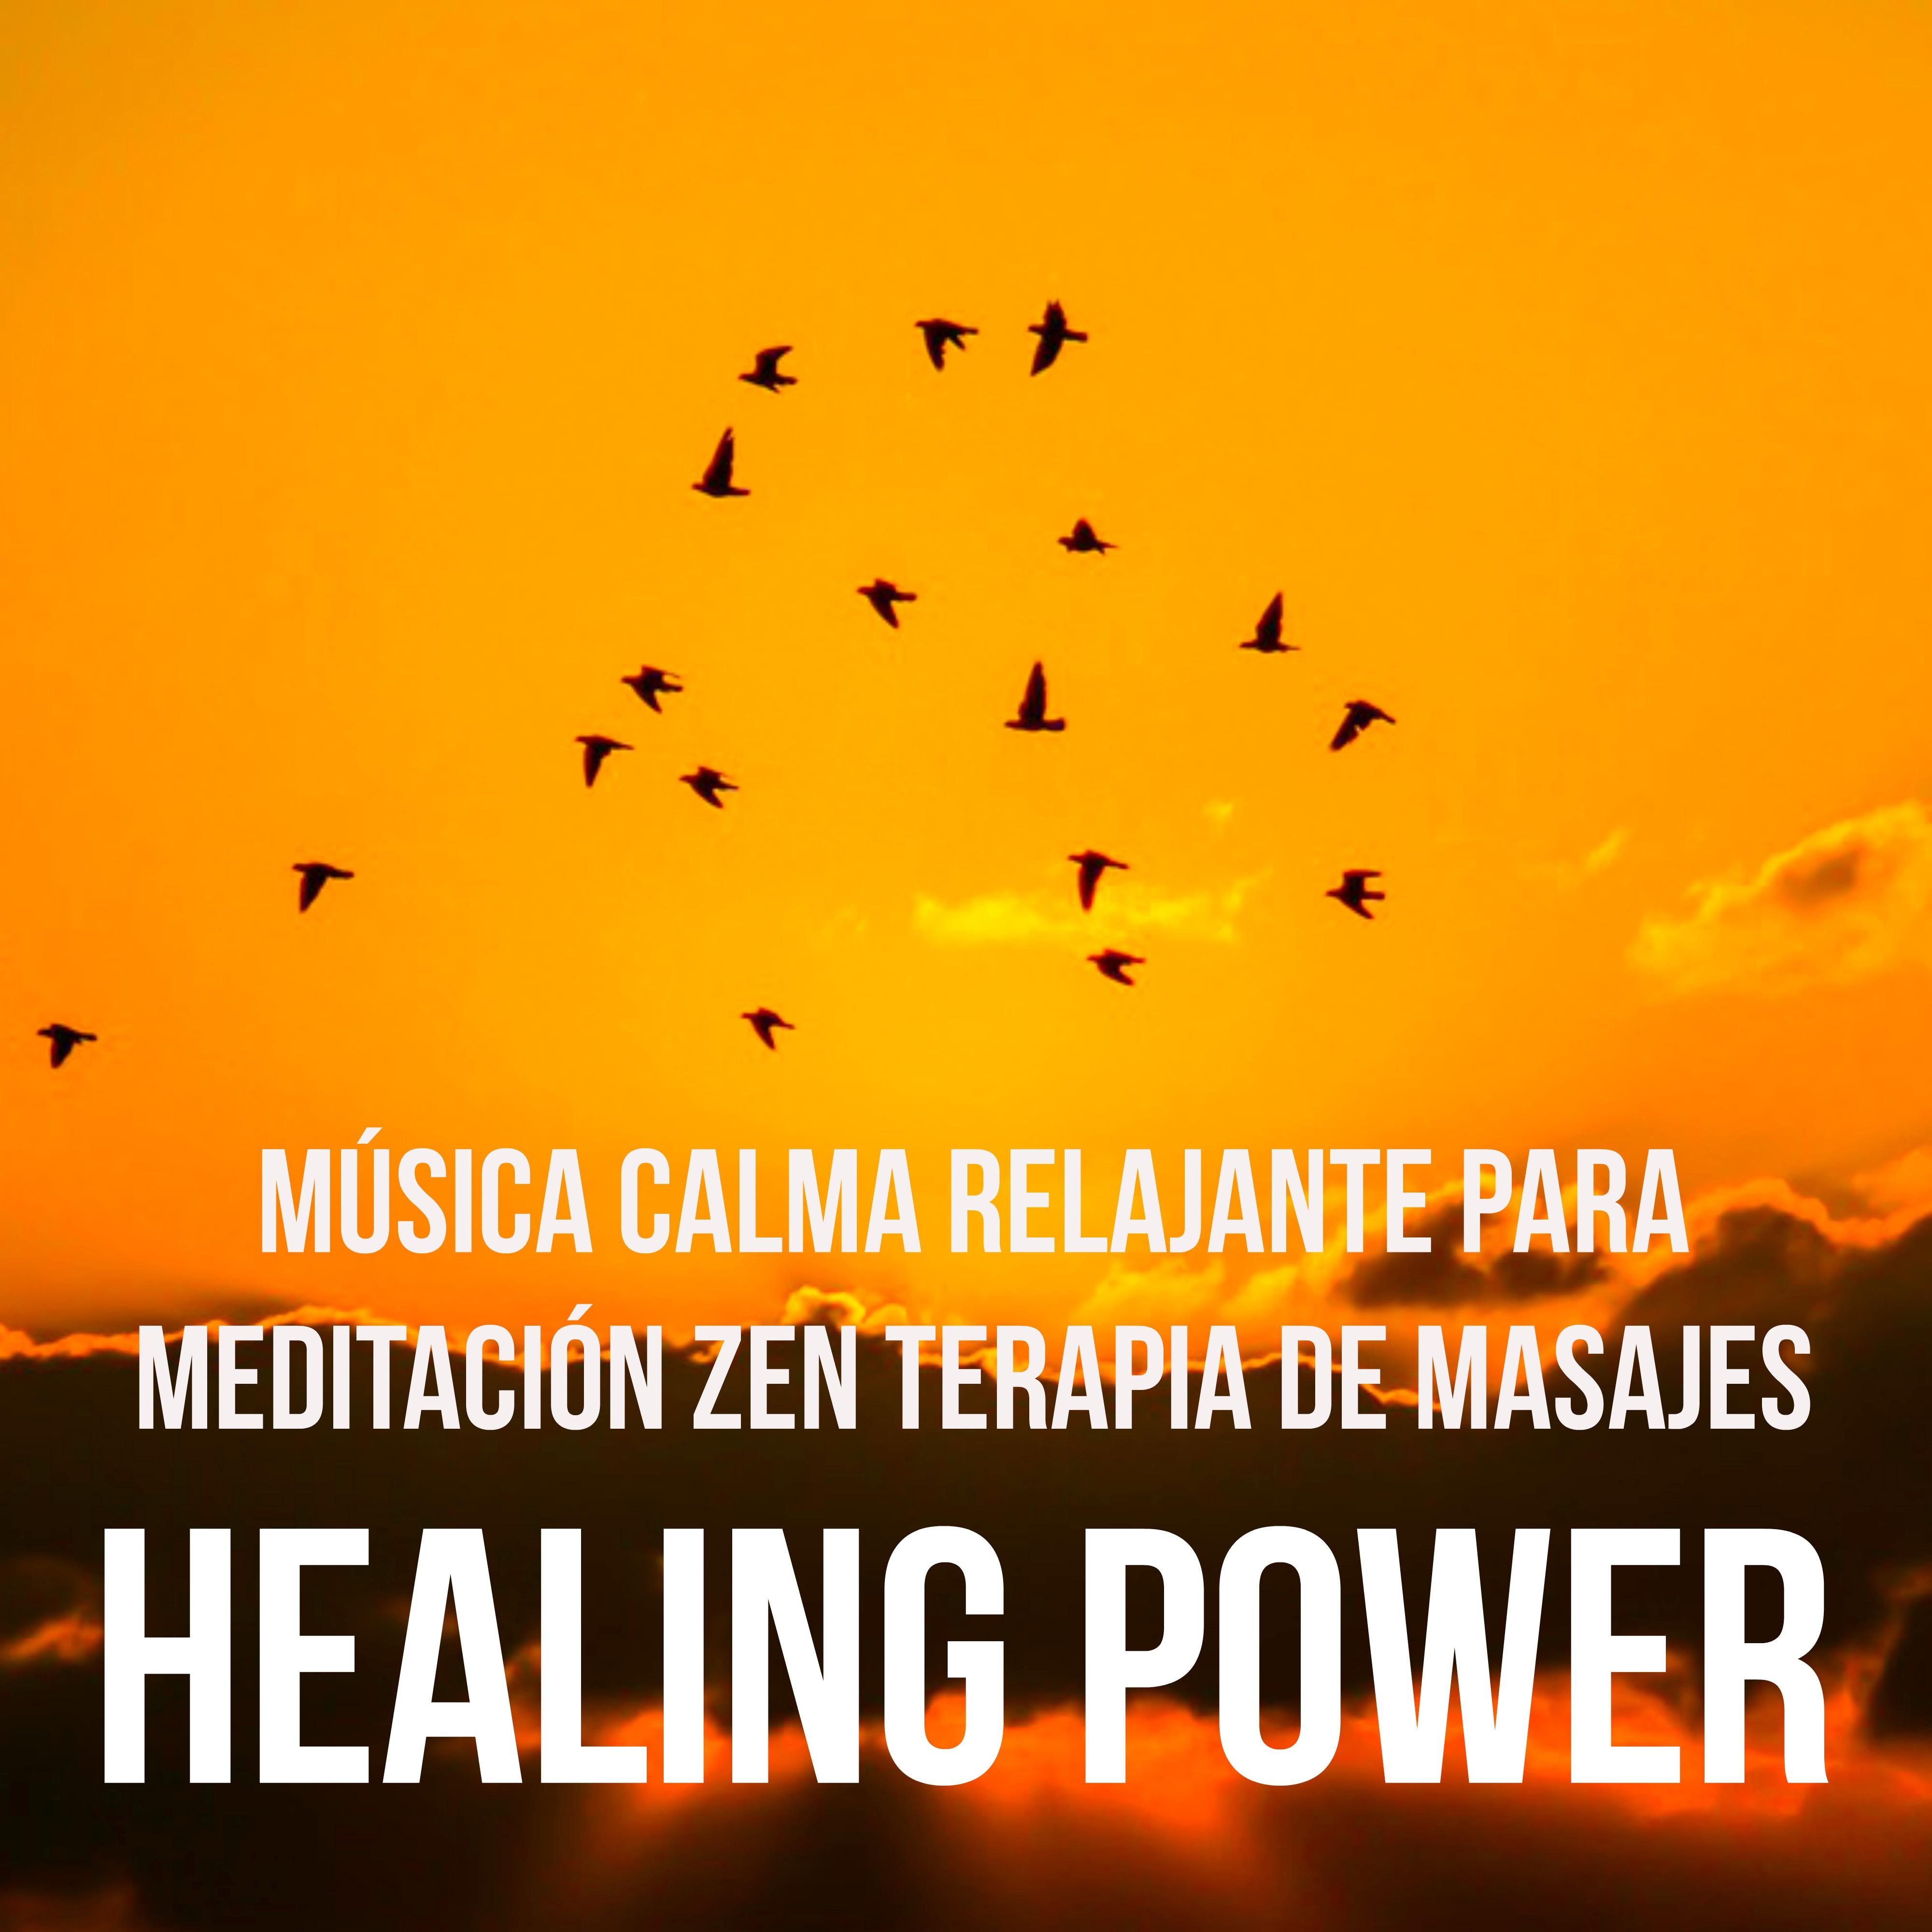 Healing Power  Mu sica Calma Relajante para Meditacio n Zen Terapia de Masajes Poder de la Mente con Sonidos Naturales Instrumentales y New Age